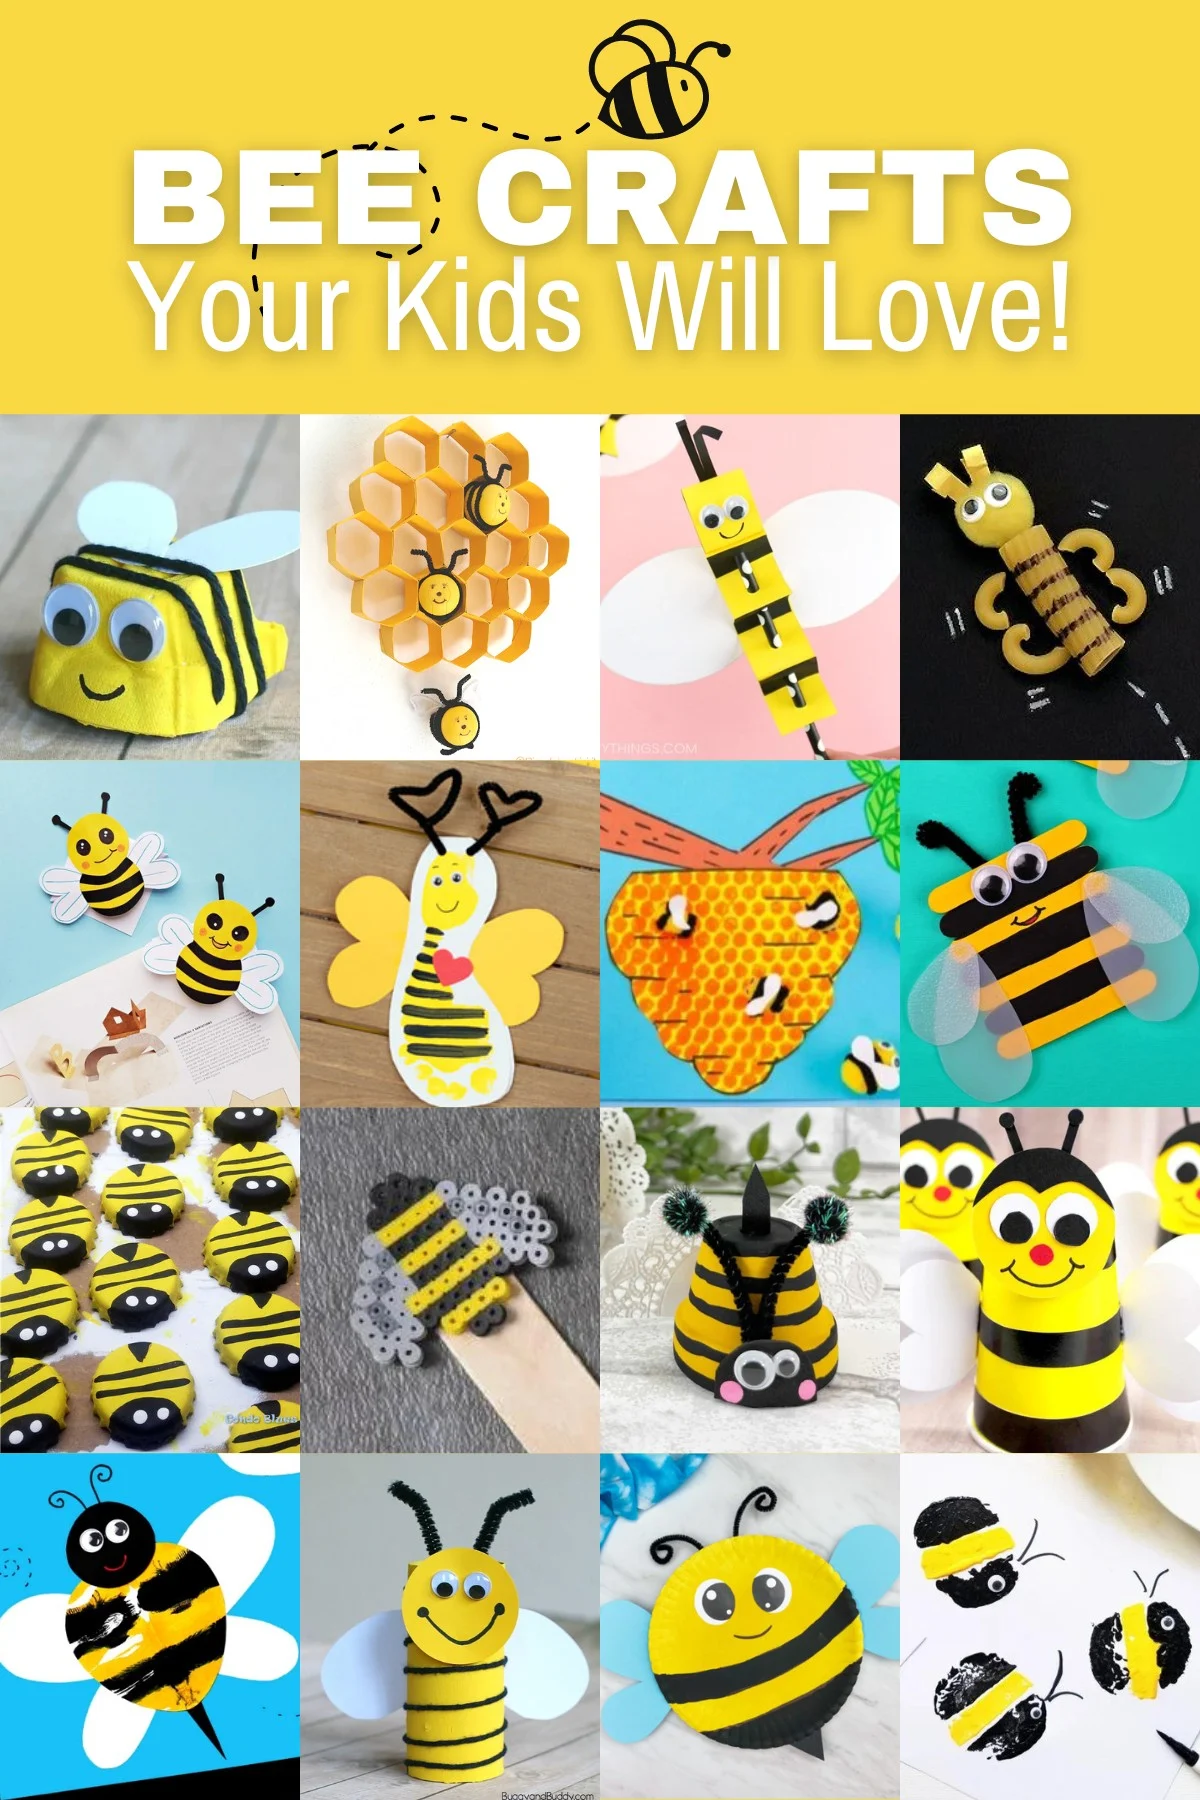 https://diycandy.b-cdn.net/wp-content/uploads/2023/02/Bee-crafts-your-kids-will-love.jpg.webp